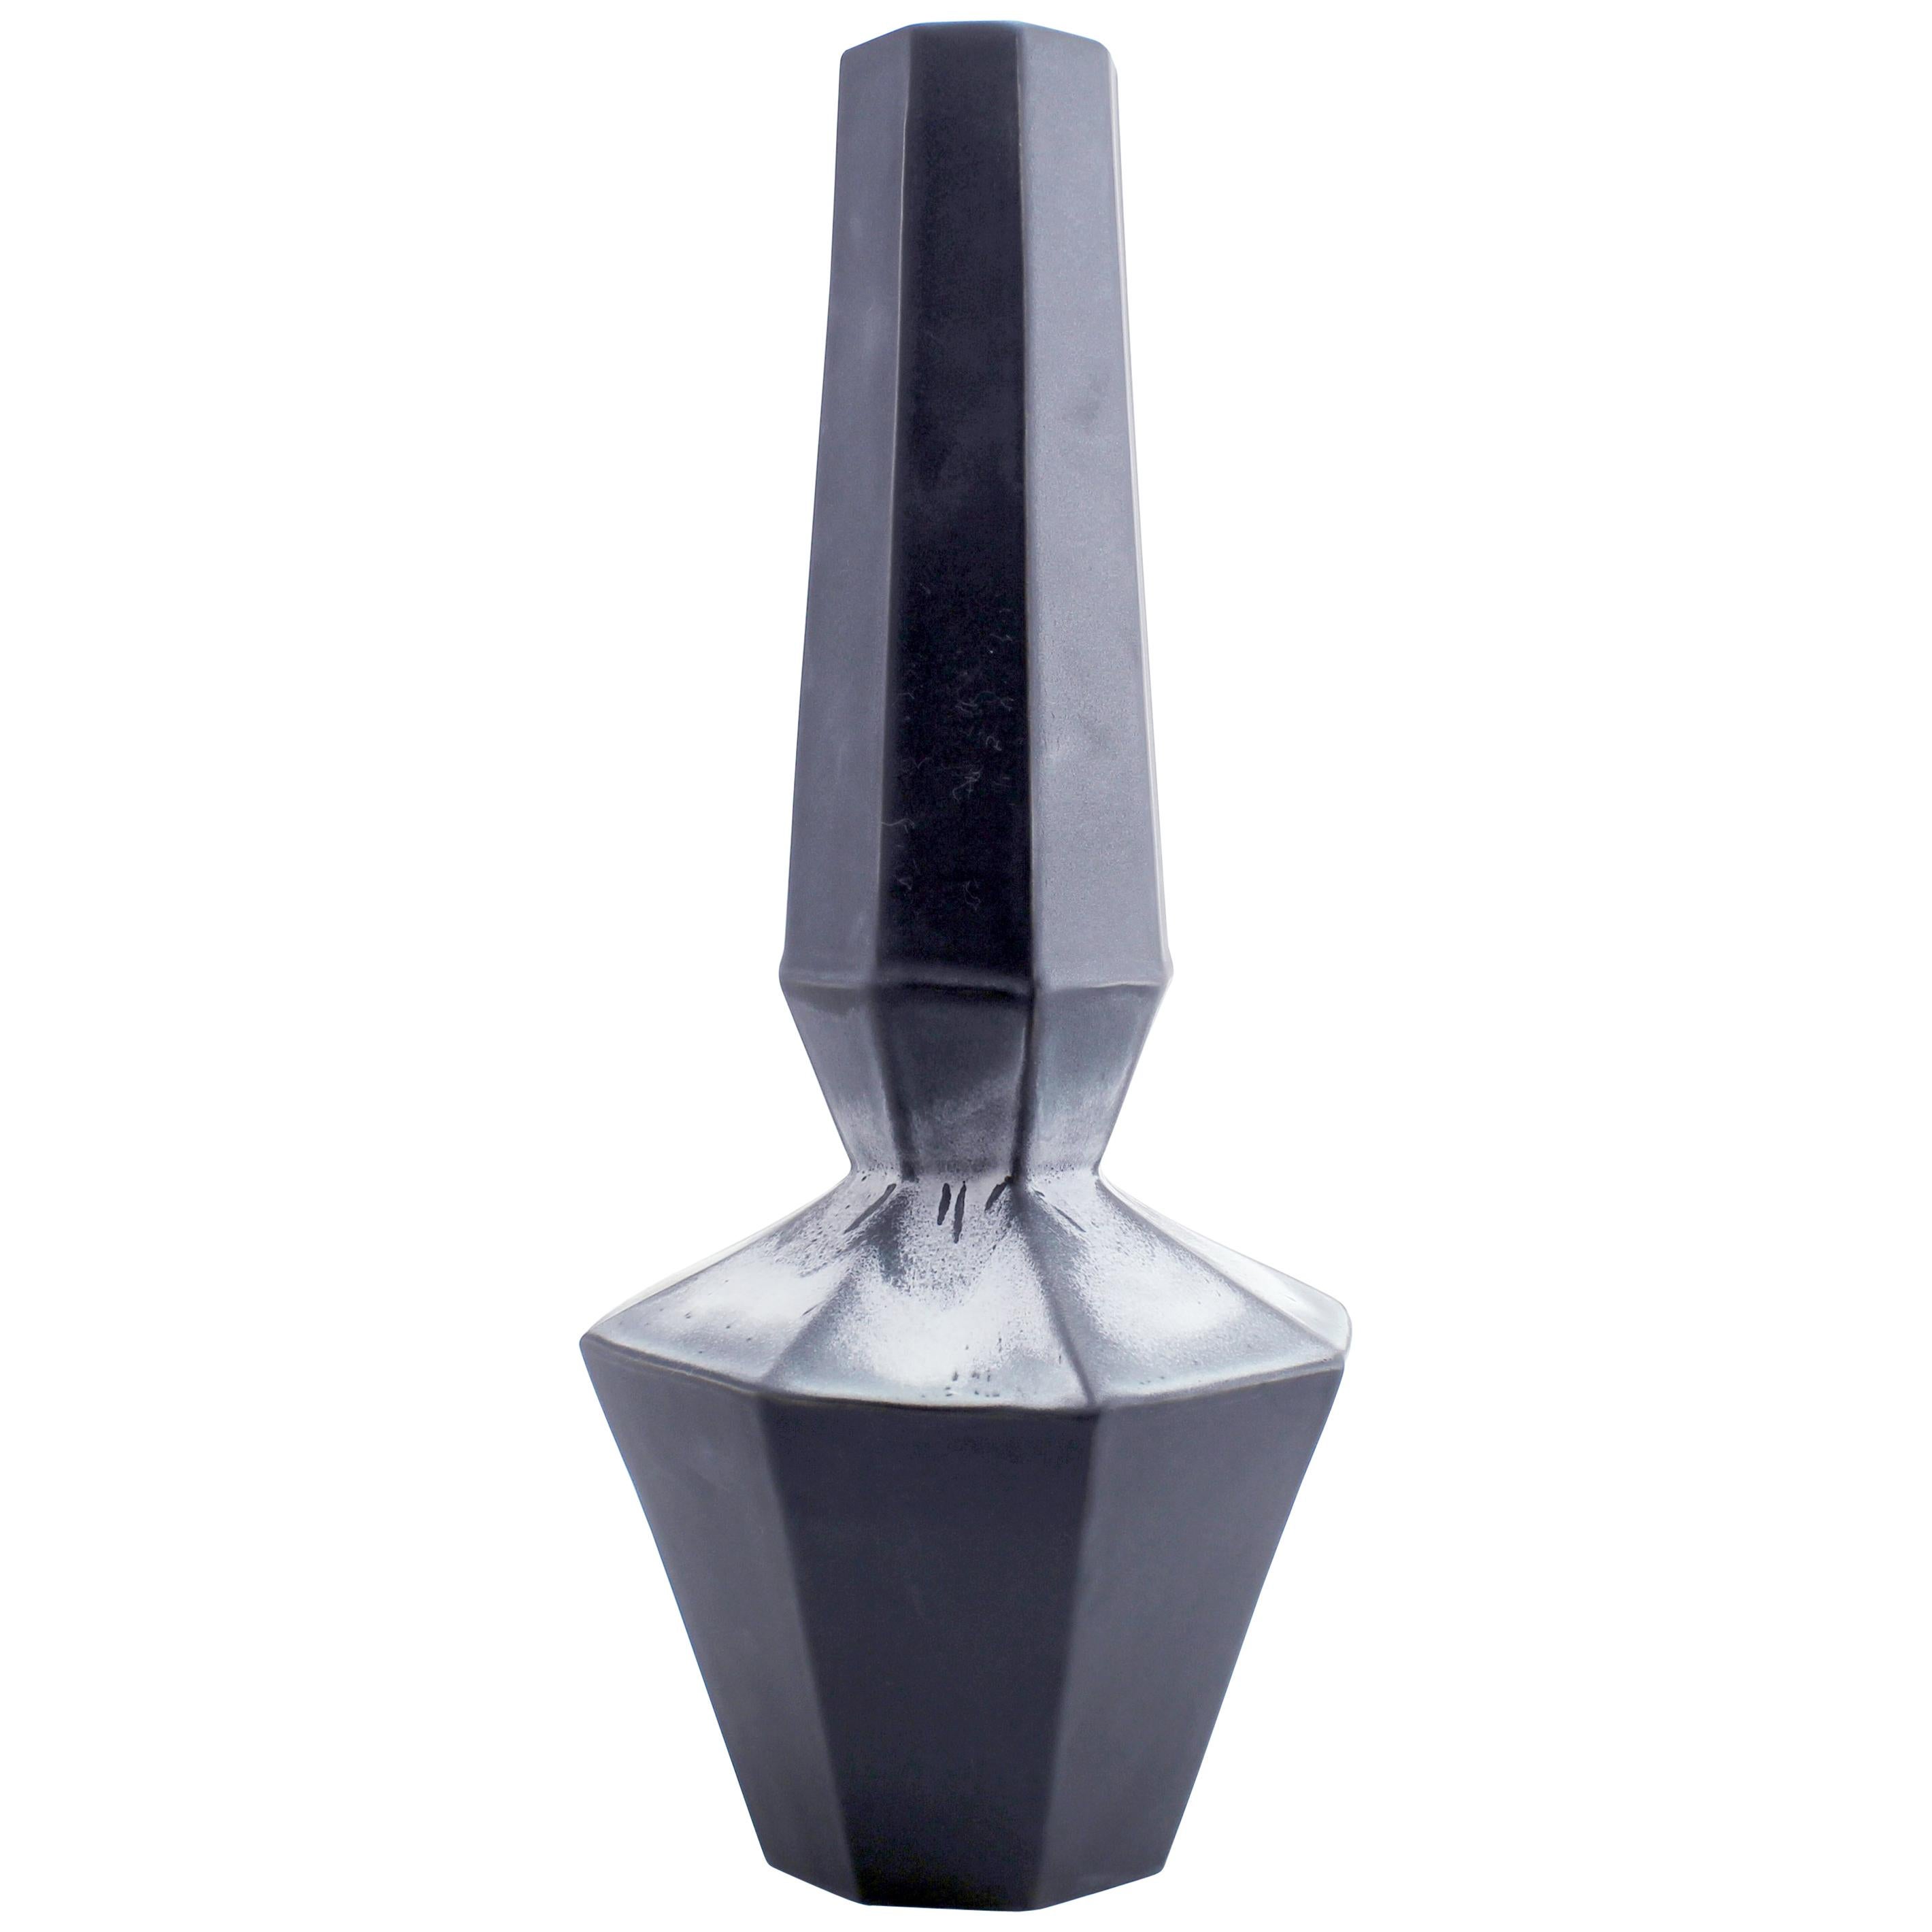 Geometric Statement Vase Ash Matte Black Faceted Porcelain Modern Minimal For Sale